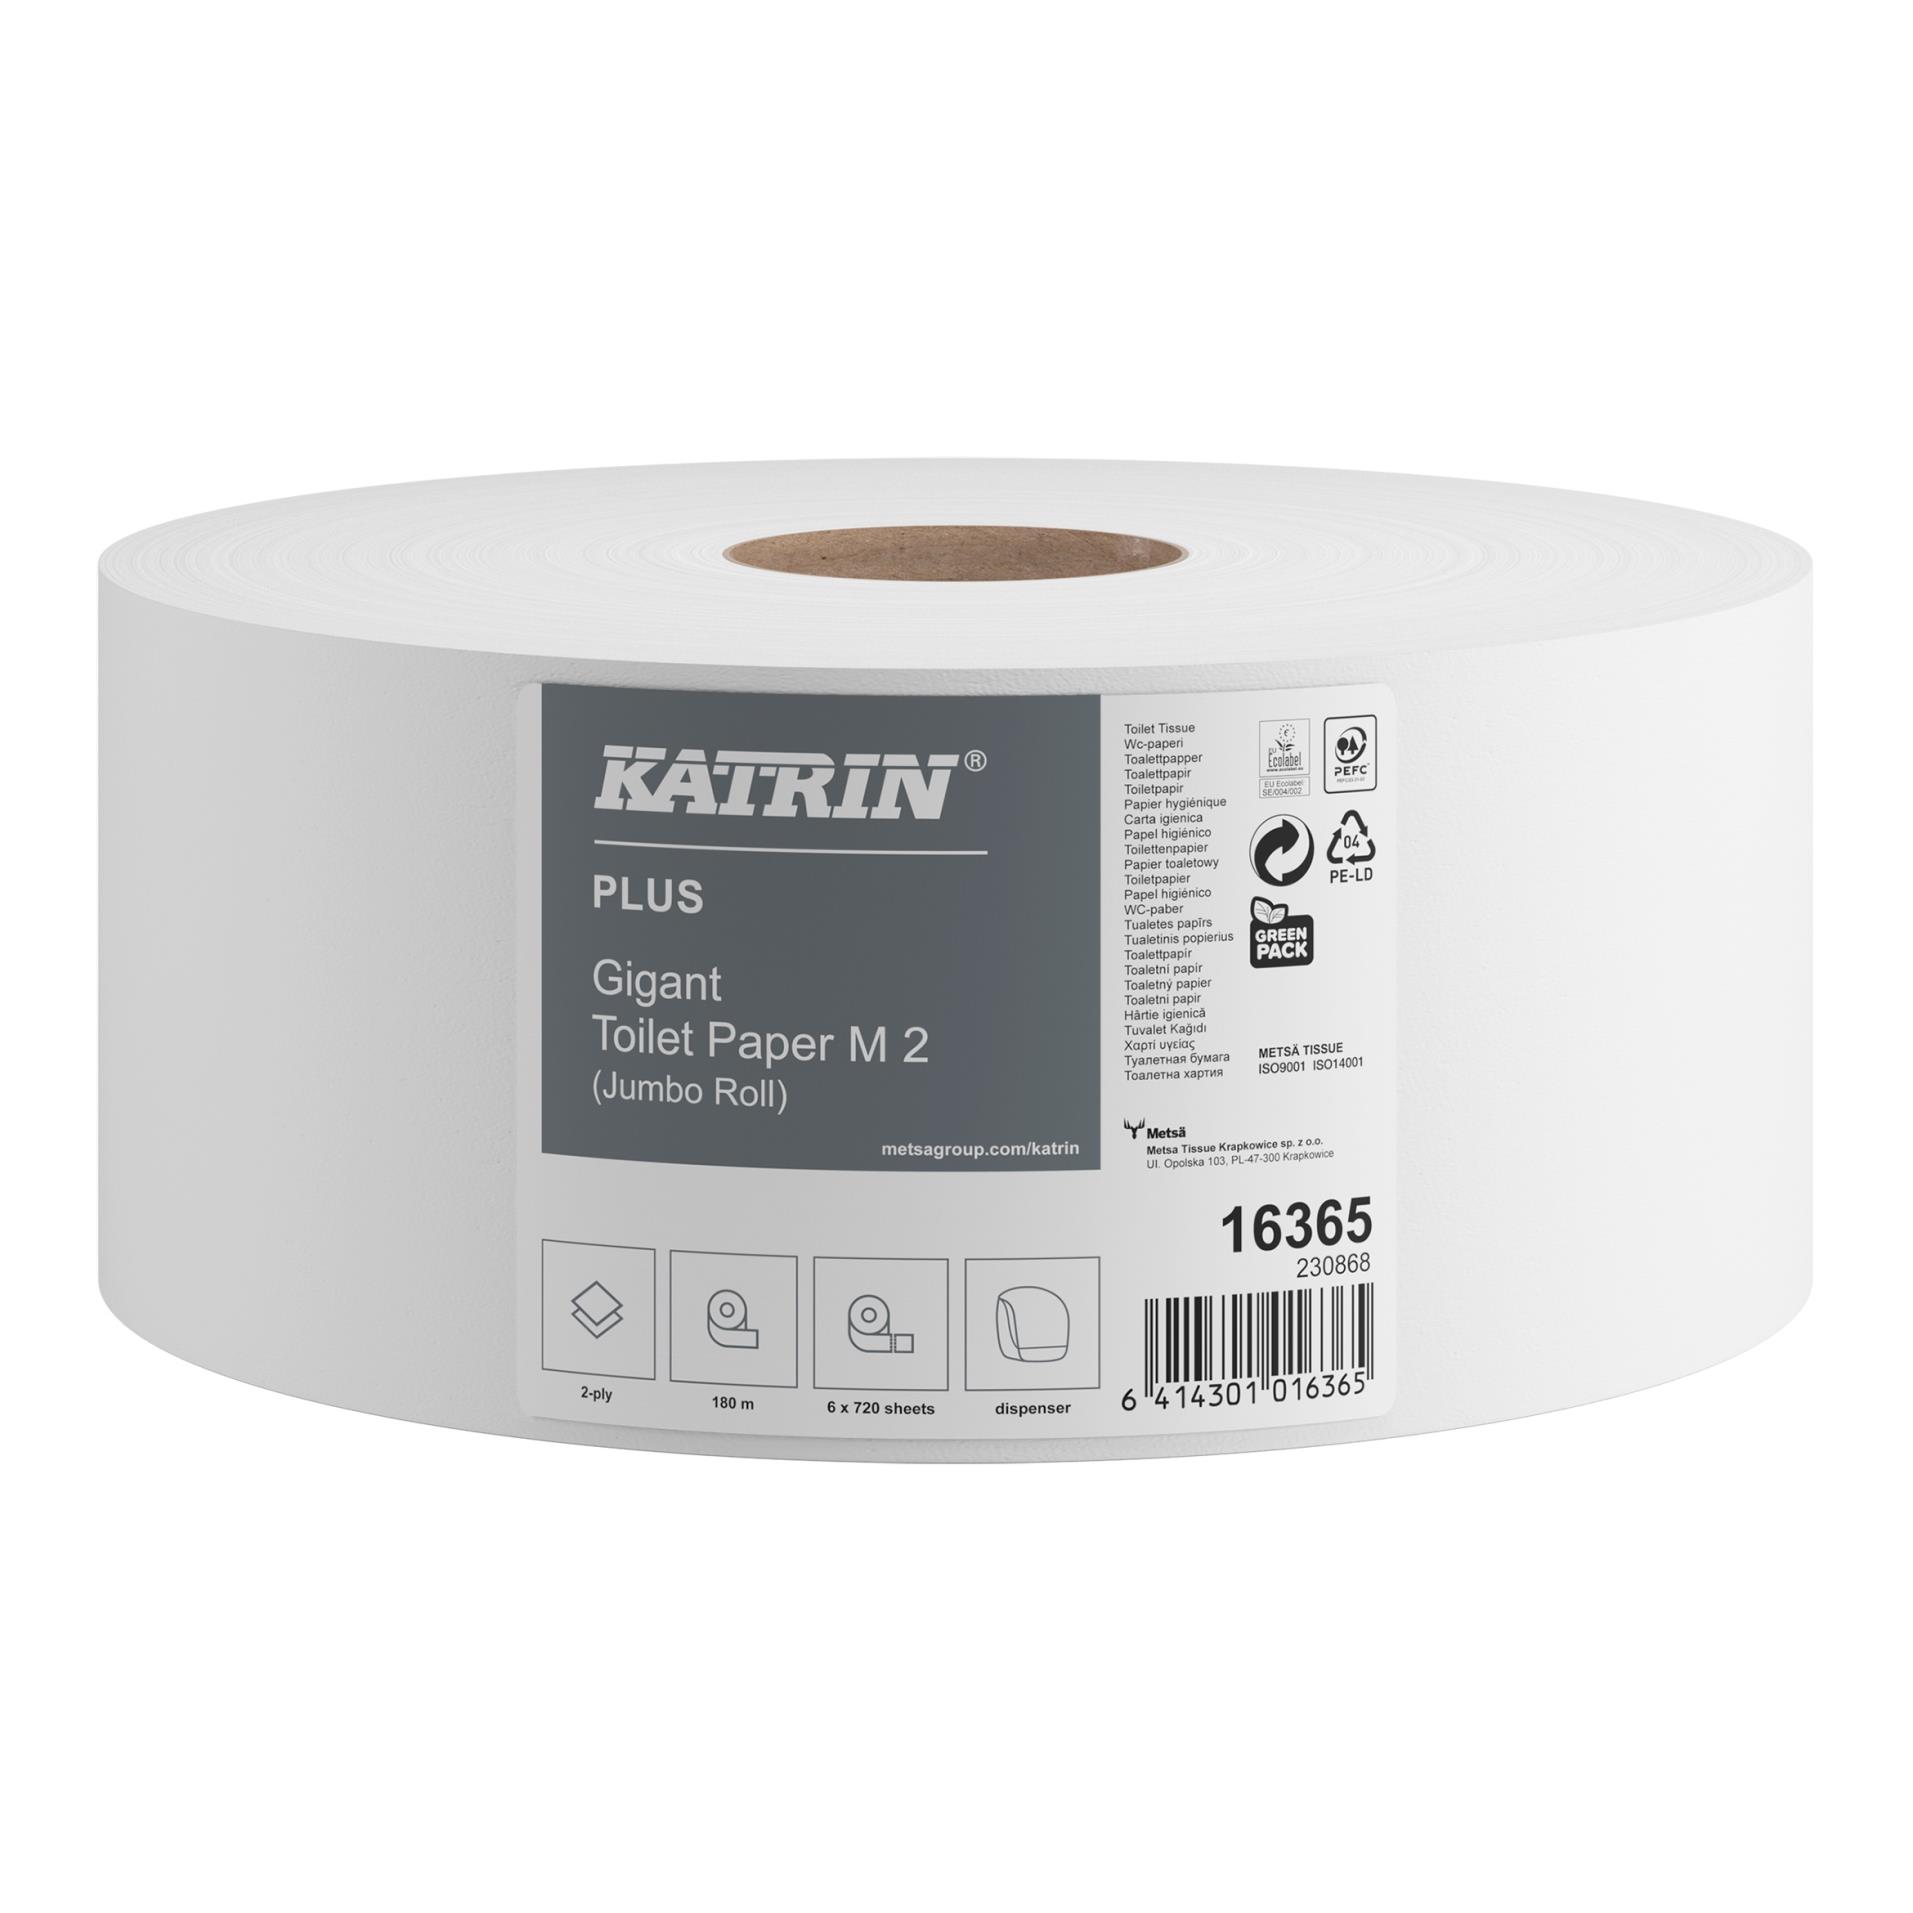 Toaletní papír Katrin Gigant Plus M2 - 2 vrstvý, 6 rolí